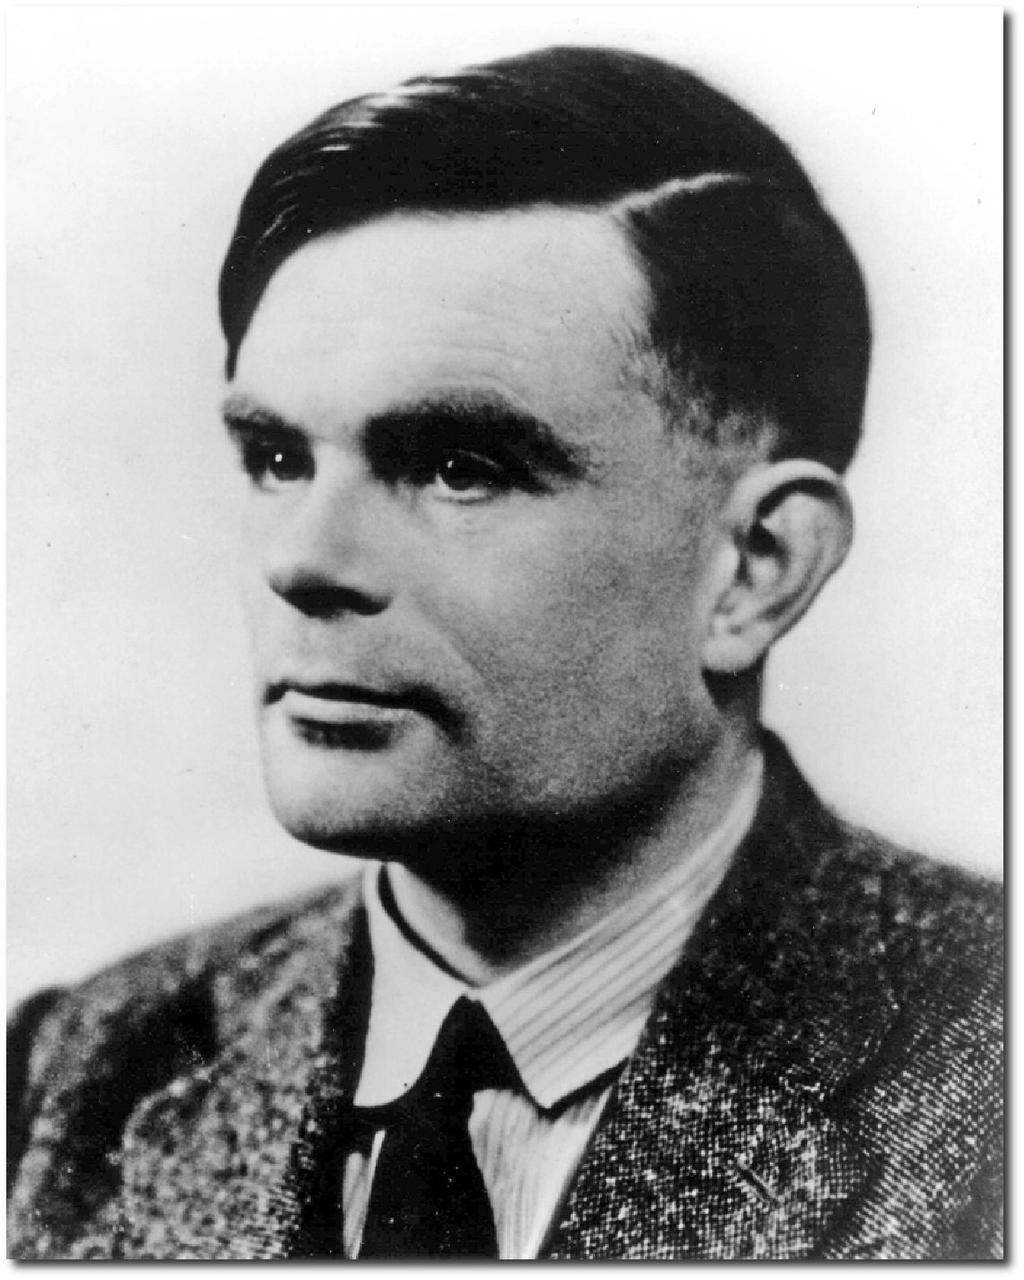 μηχανιστικά ισοδύναμα (effectively equivalent) Alonzo Church Alan Turing